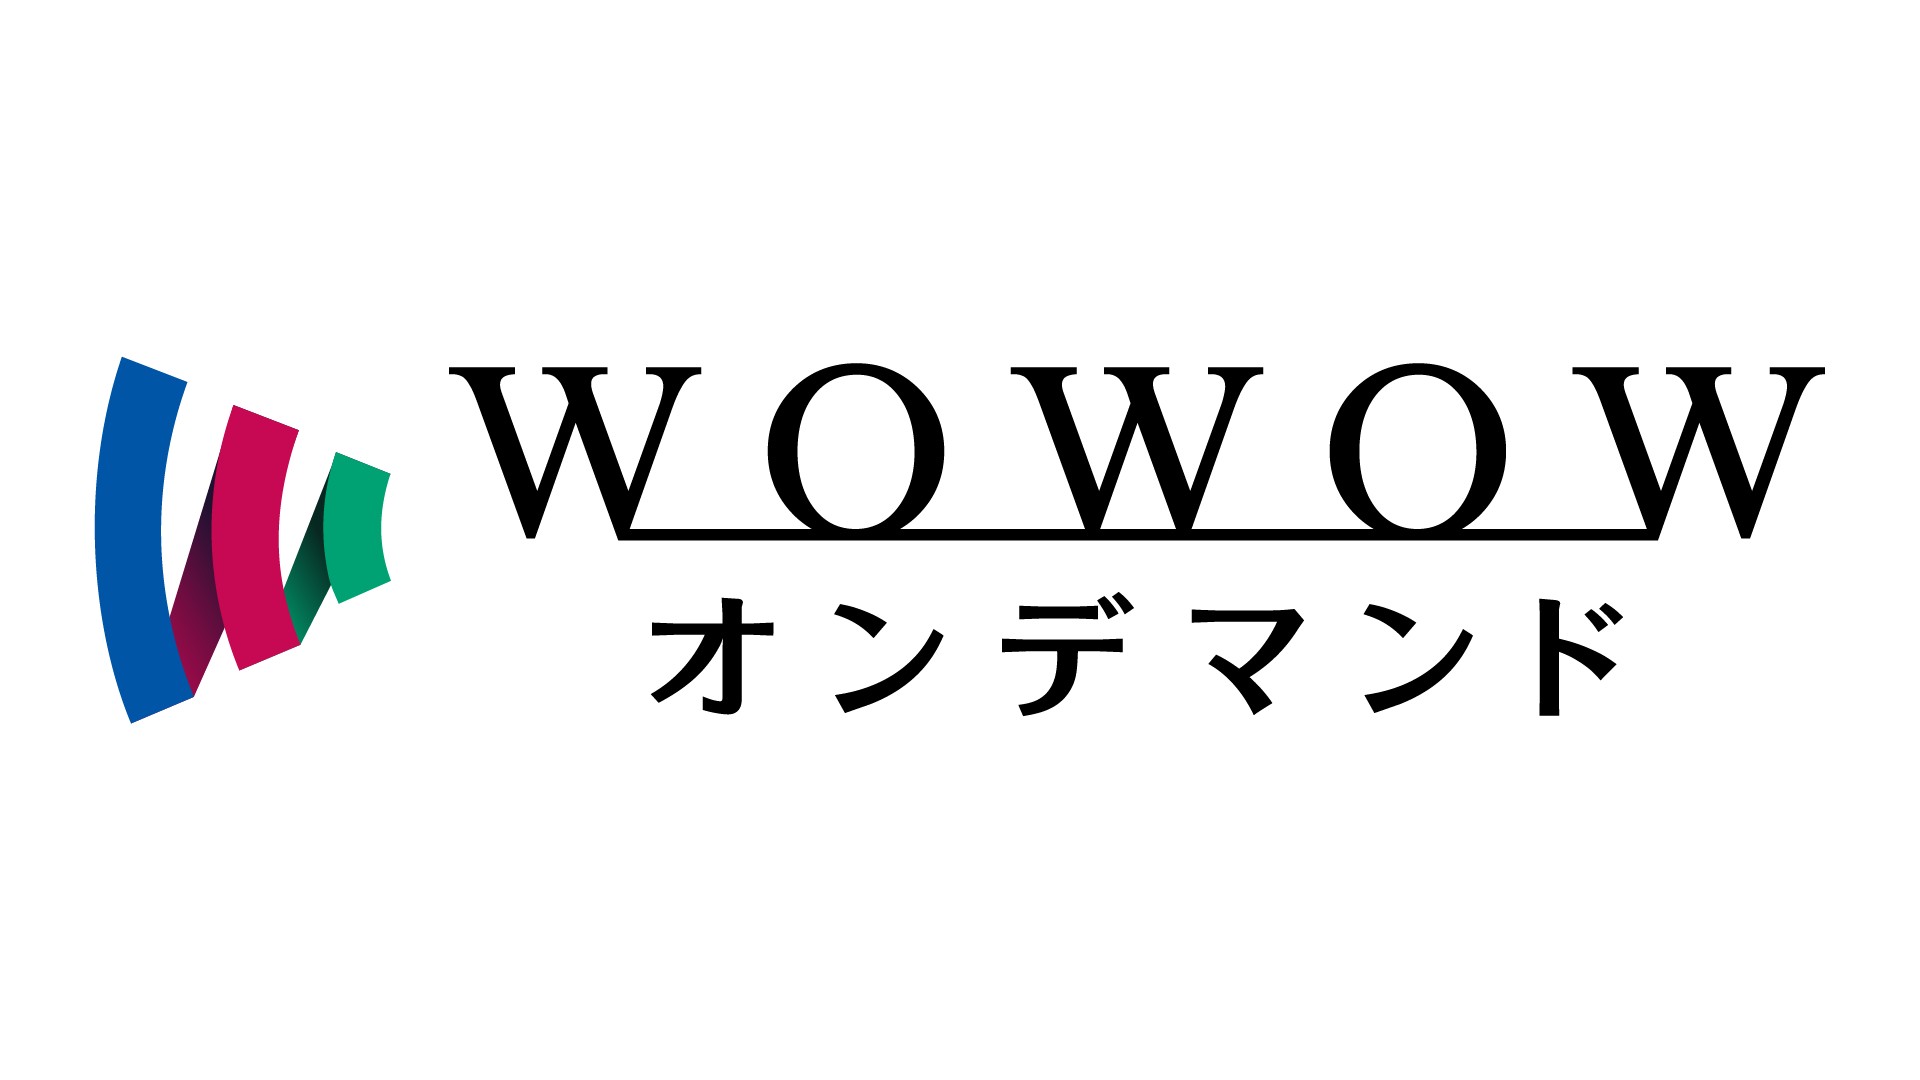 Wowowオンデマンドとは アプリ テレビ視聴方法を解説 Goal Com